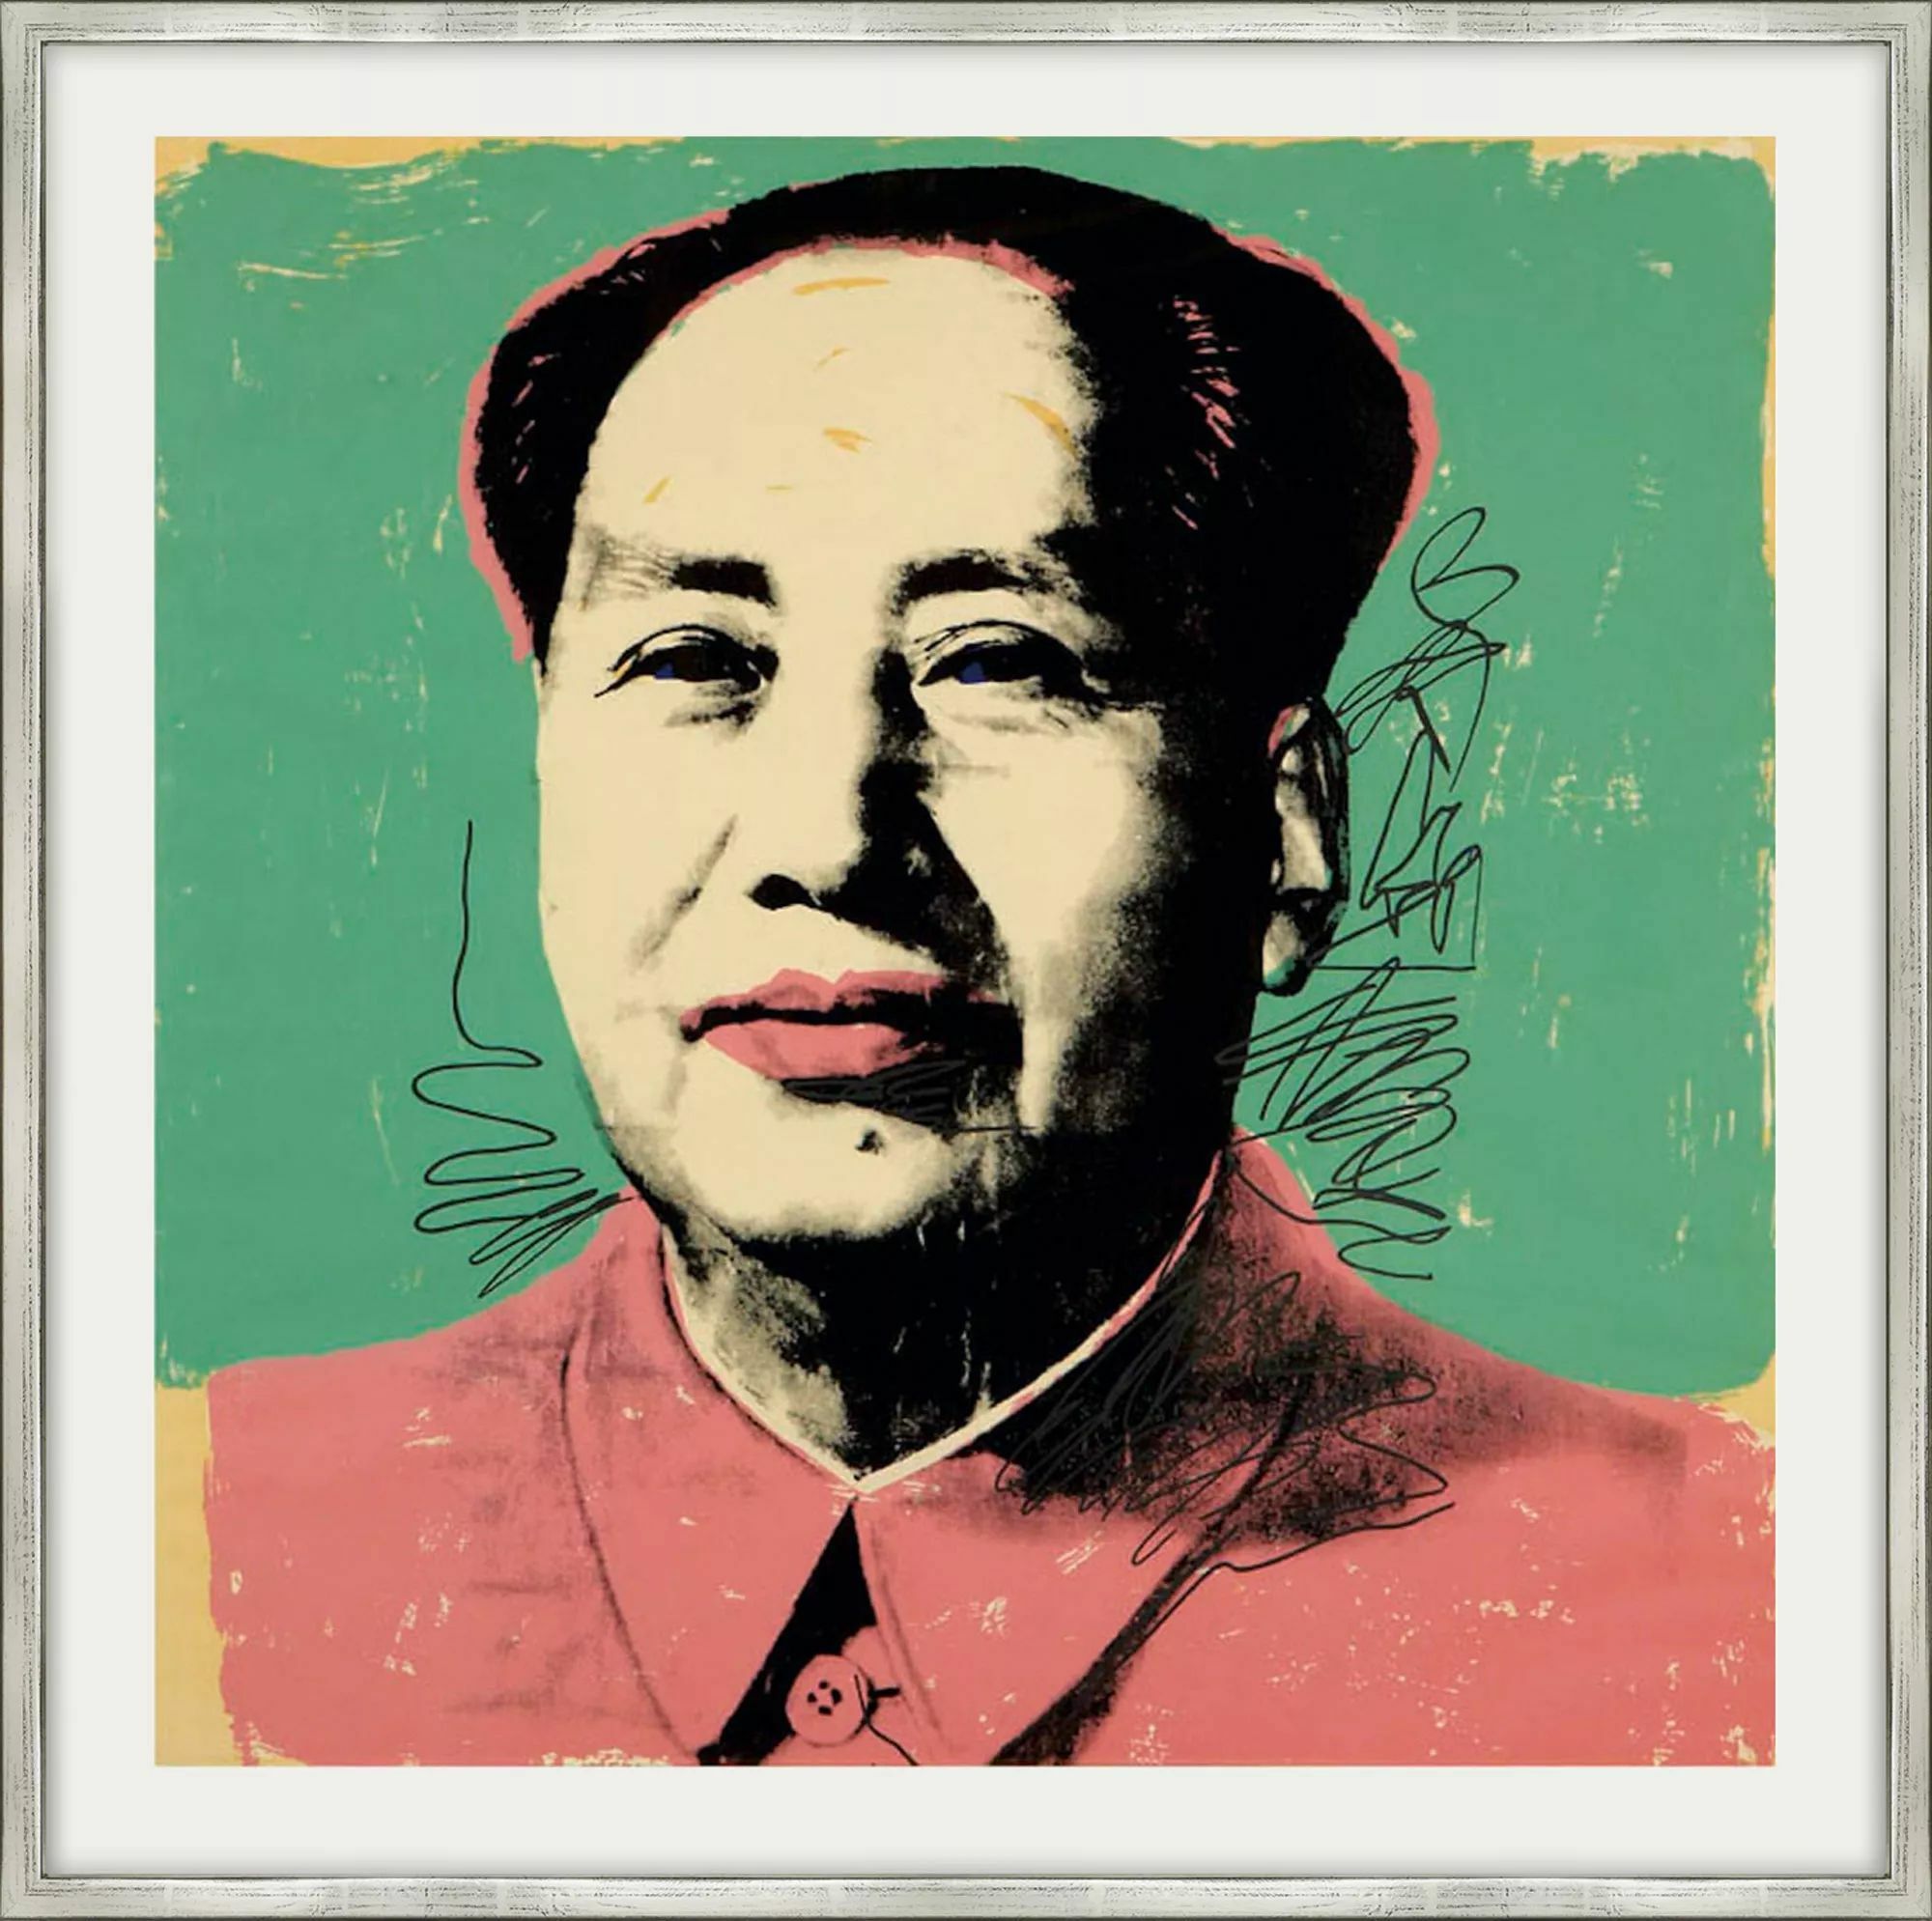 Bild "Mao (FS II.92)" (1972) von Andy Warhol